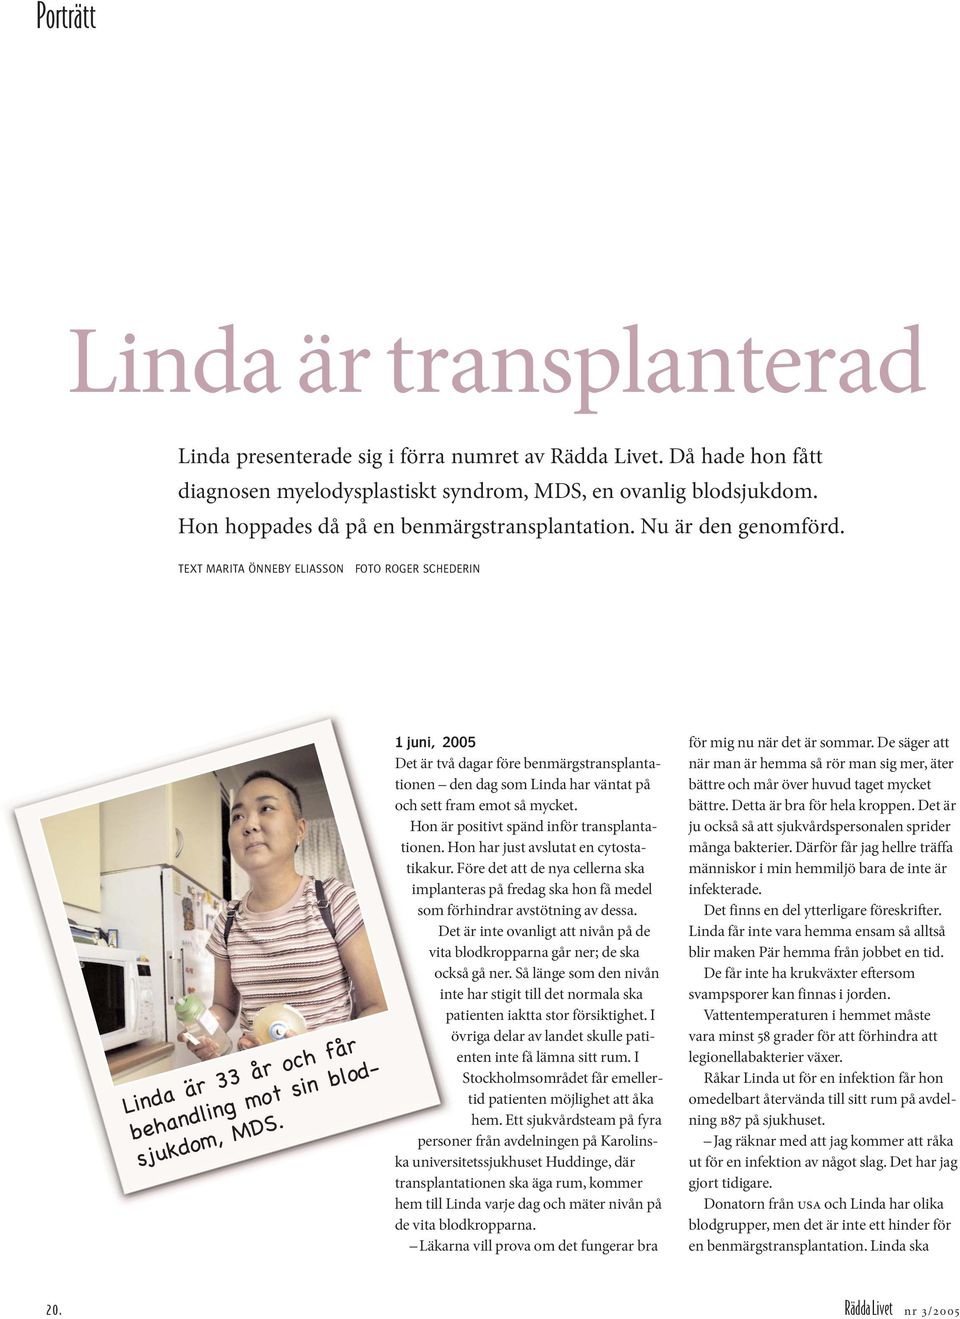 1 juni, 2005 Det är två dagar före benmärgstransplantationen den dag som Linda har väntat på och sett fram emot så mycket. Hon är positivt spänd inför transplantationen.